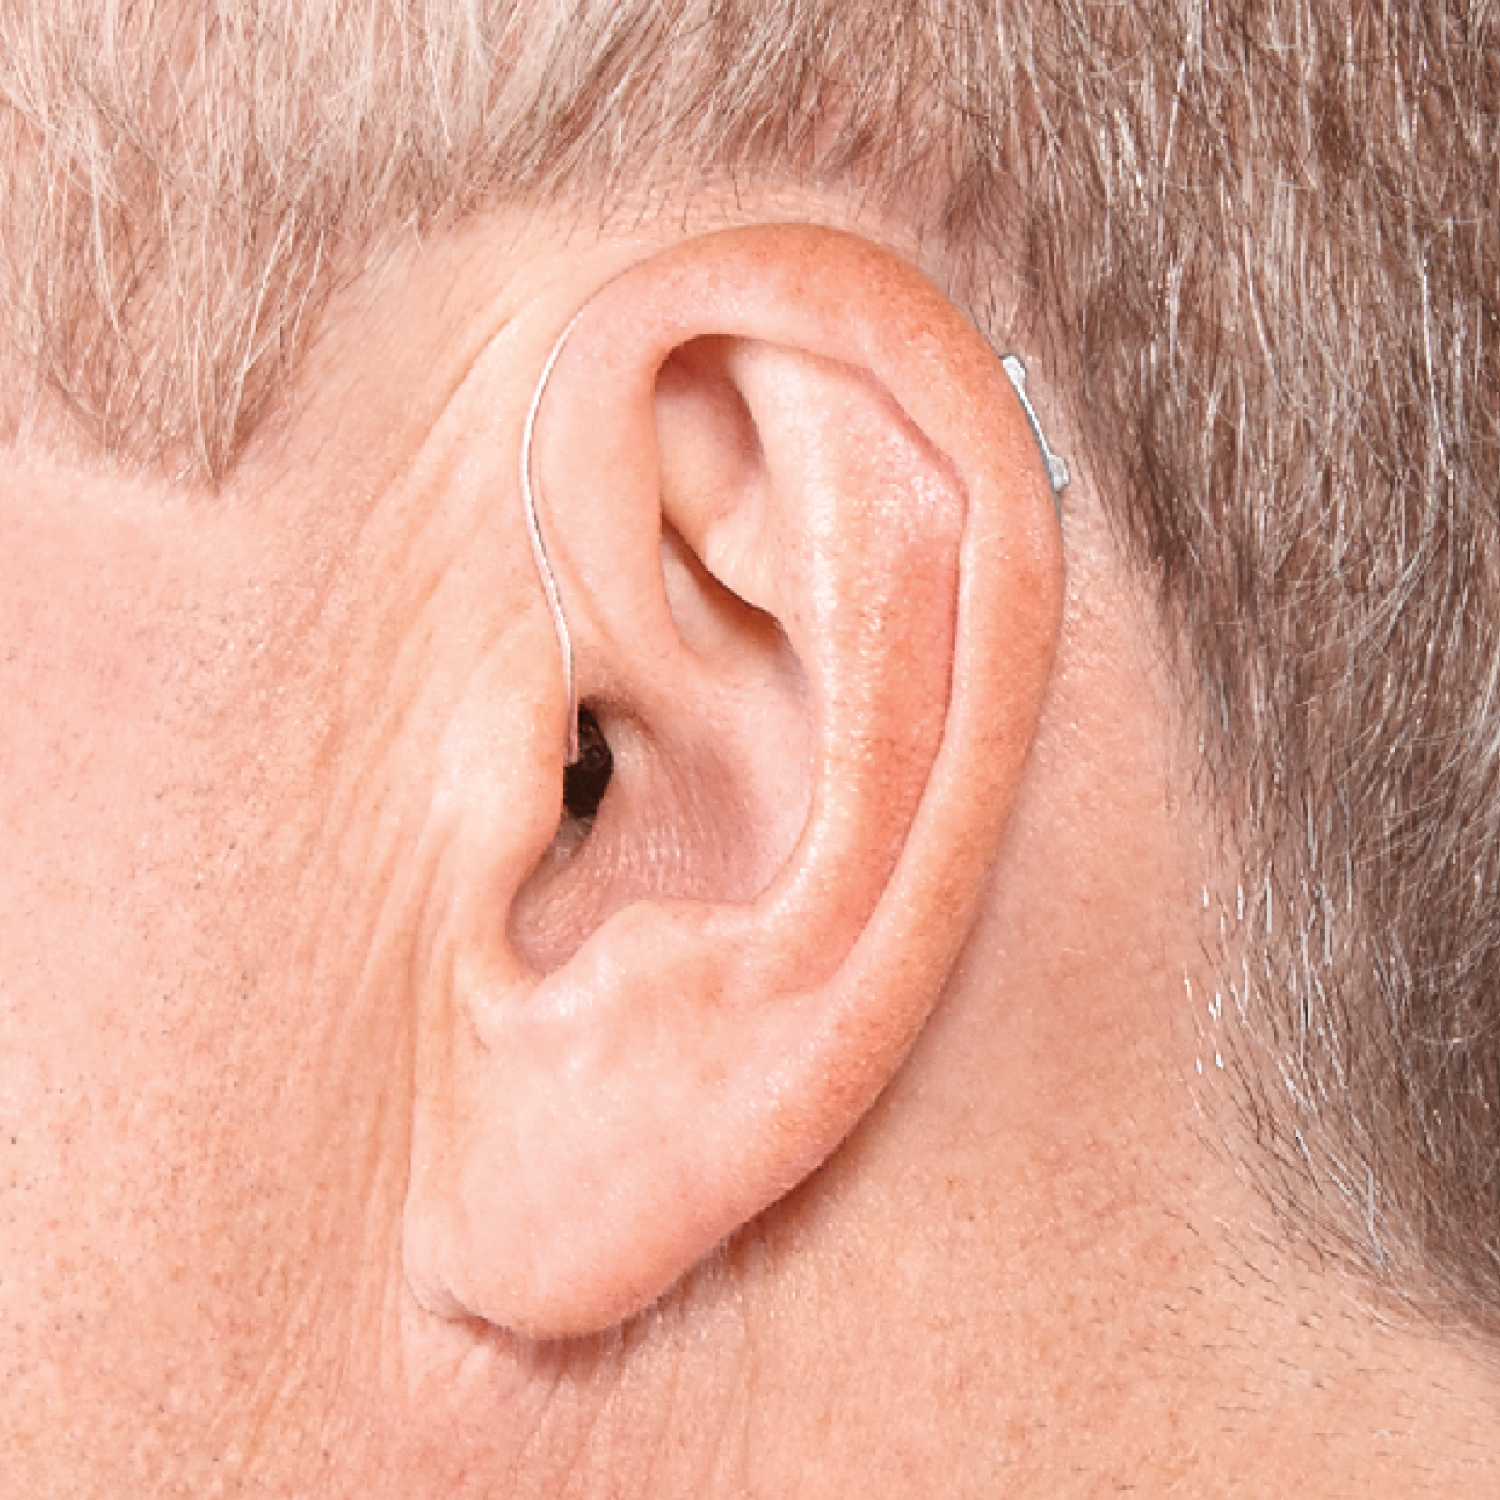 Tipos de aparelhos auditivos: fique por dentro das novidades!